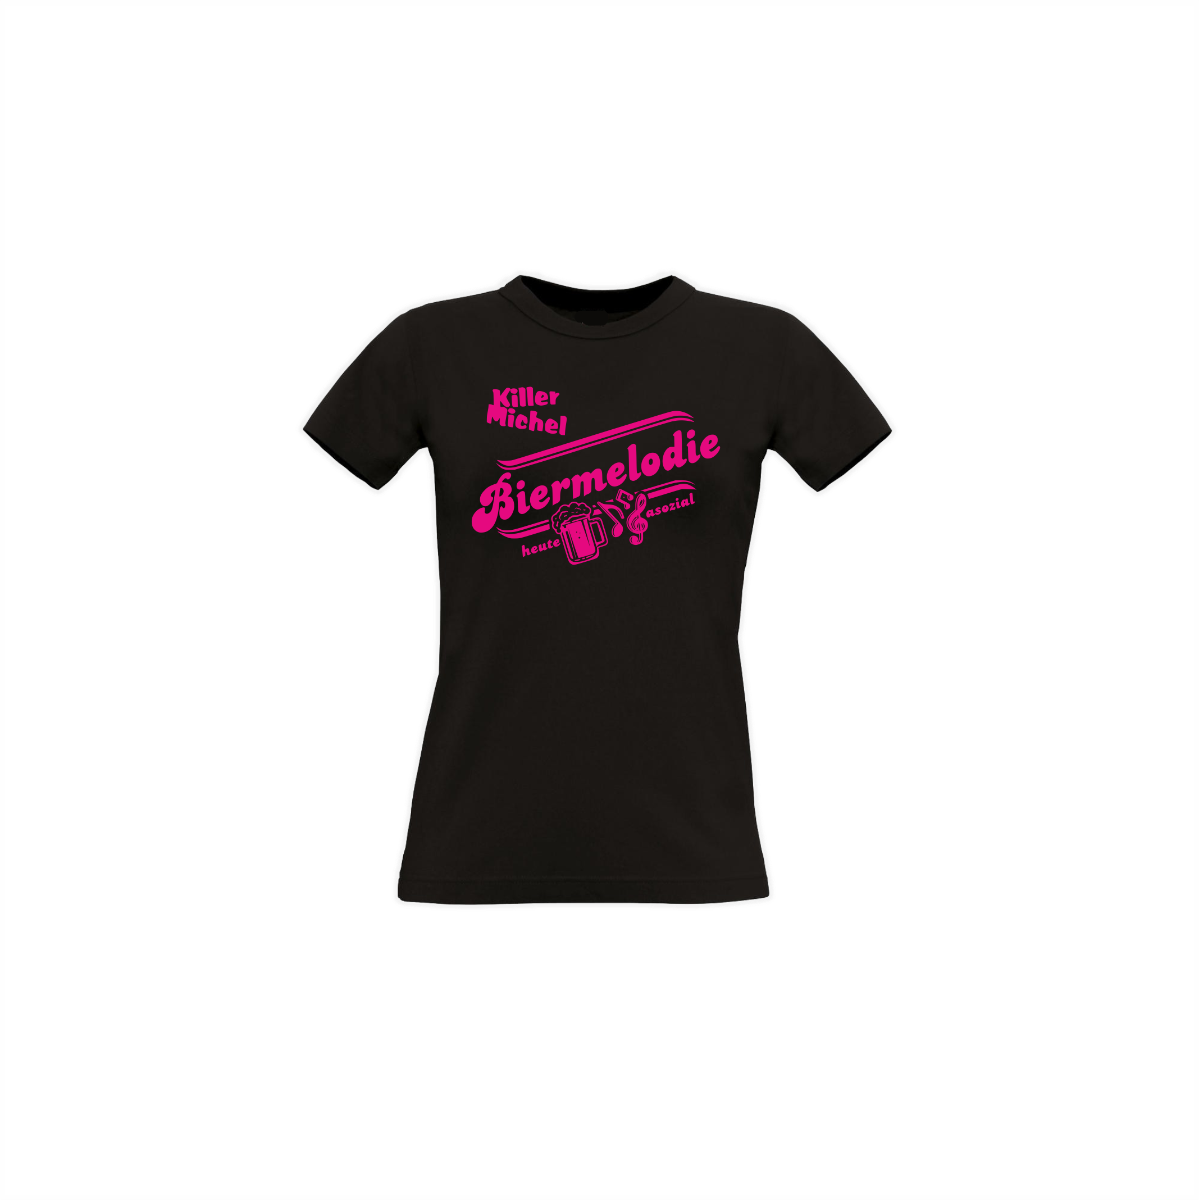 Girly-Shirt "BIERMELODIE" schwarz, neonpinker Druck